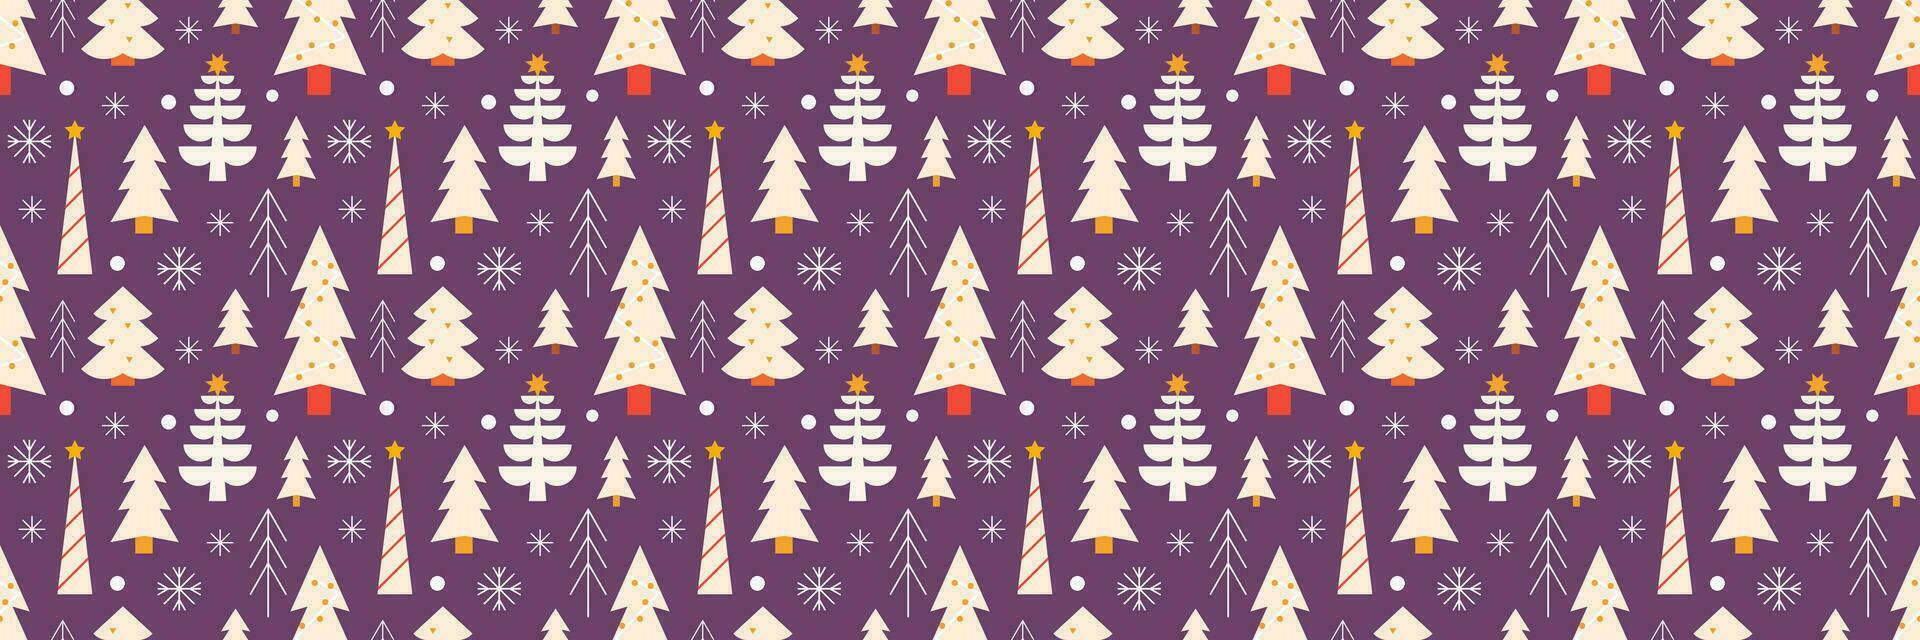 Kerstmis bomen met sneeuwvlokken, vector naadloos feestelijk patroon